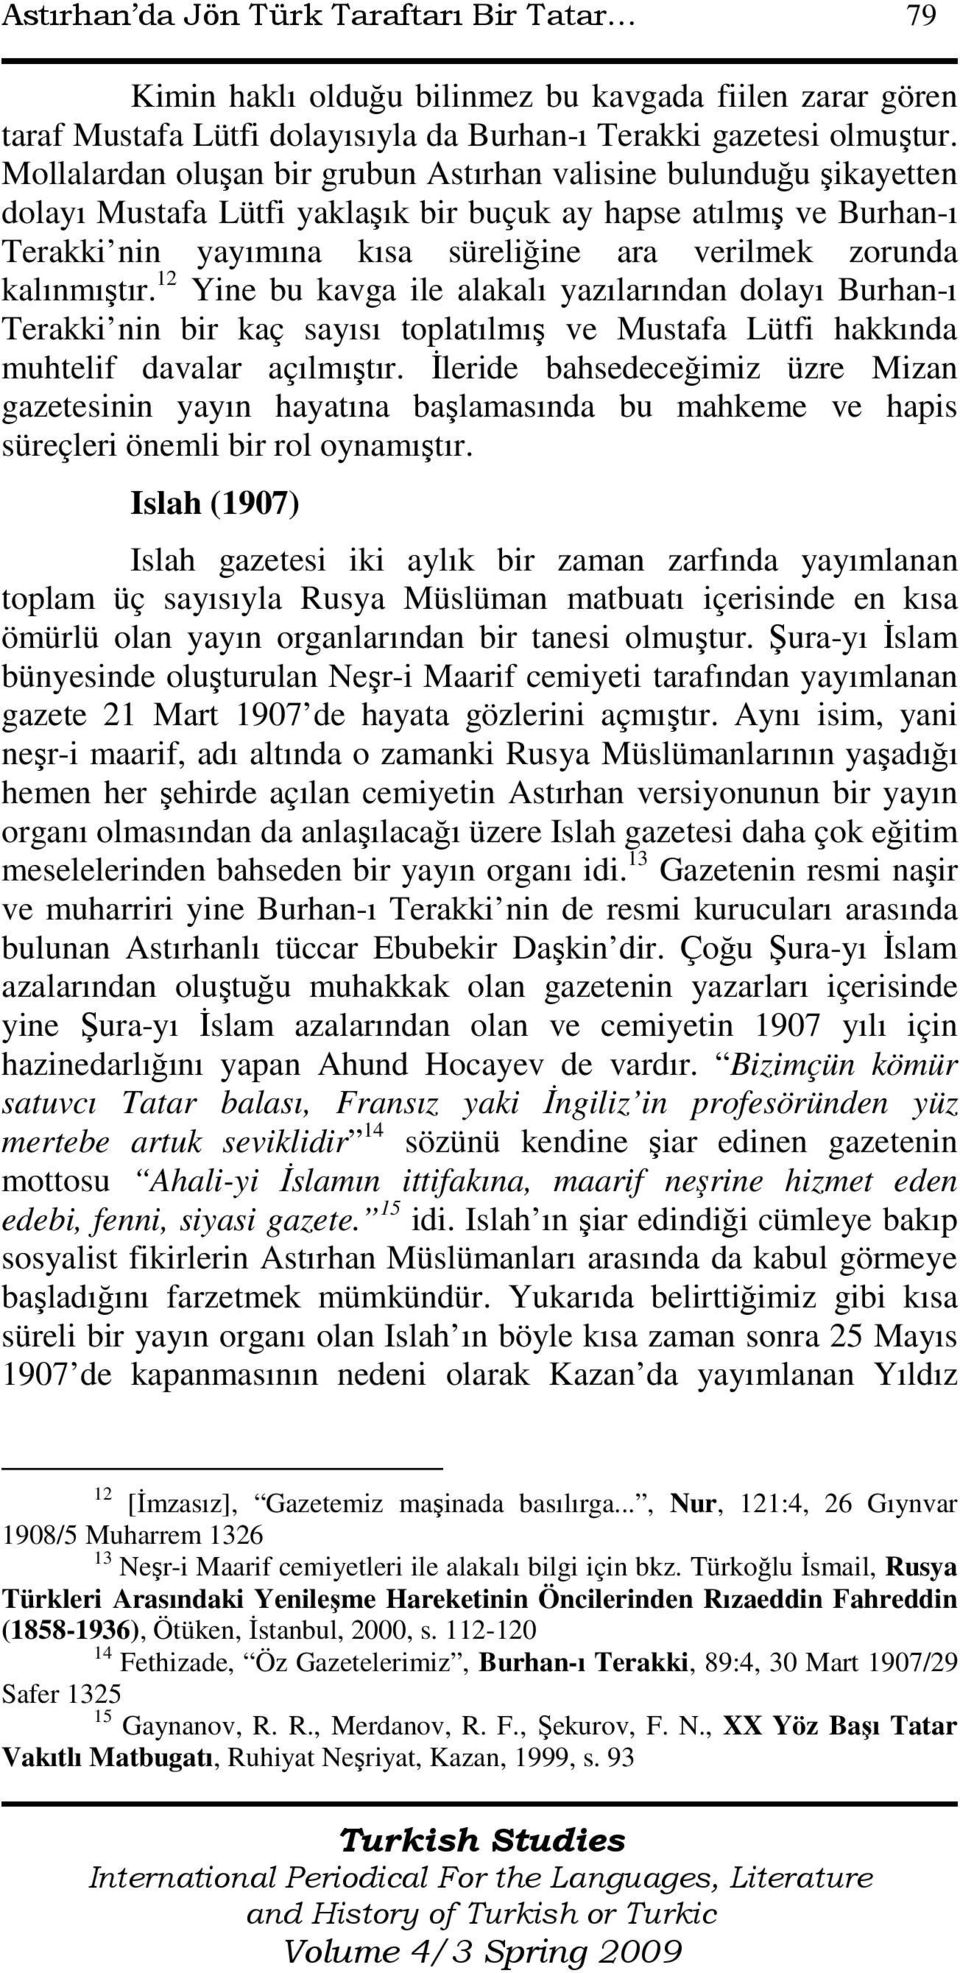 kalınmıştır. 12 Yine bu kavga ile alakalı yazılarından dolayı Burhan-ı Terakki nin bir kaç sayısı toplatılmış ve Mustafa Lütfi hakkında muhtelif davalar açılmıştır.